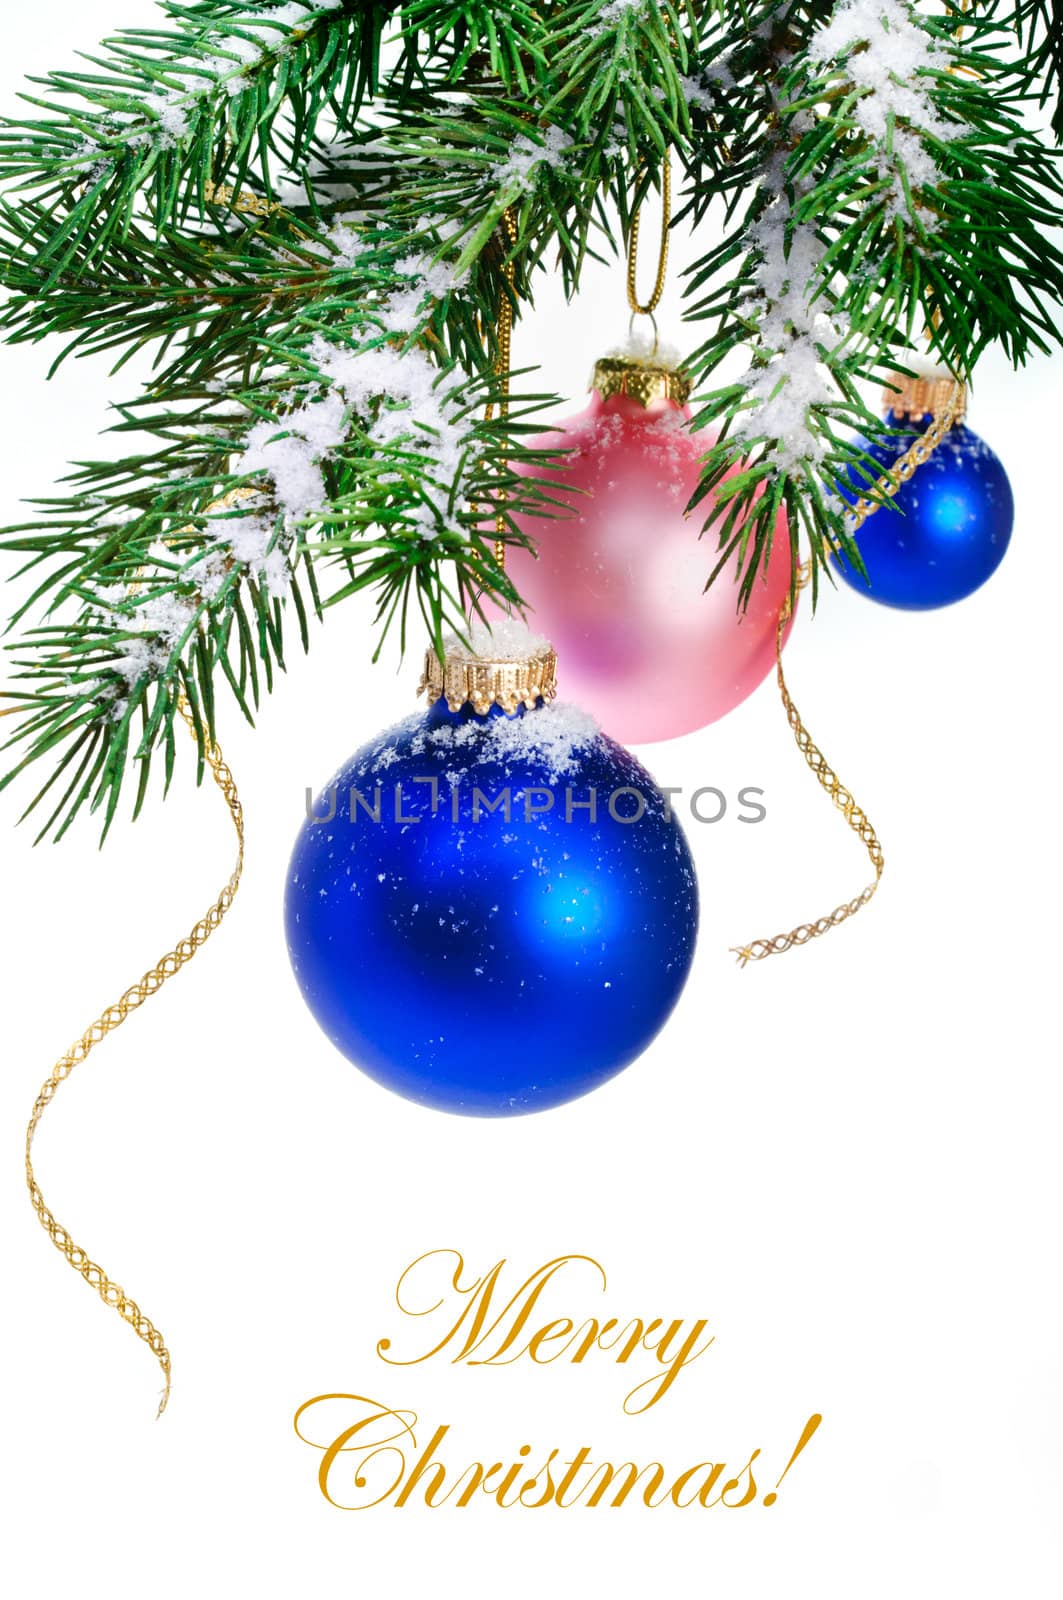 Christmas balls hanging on the Christmas tree.